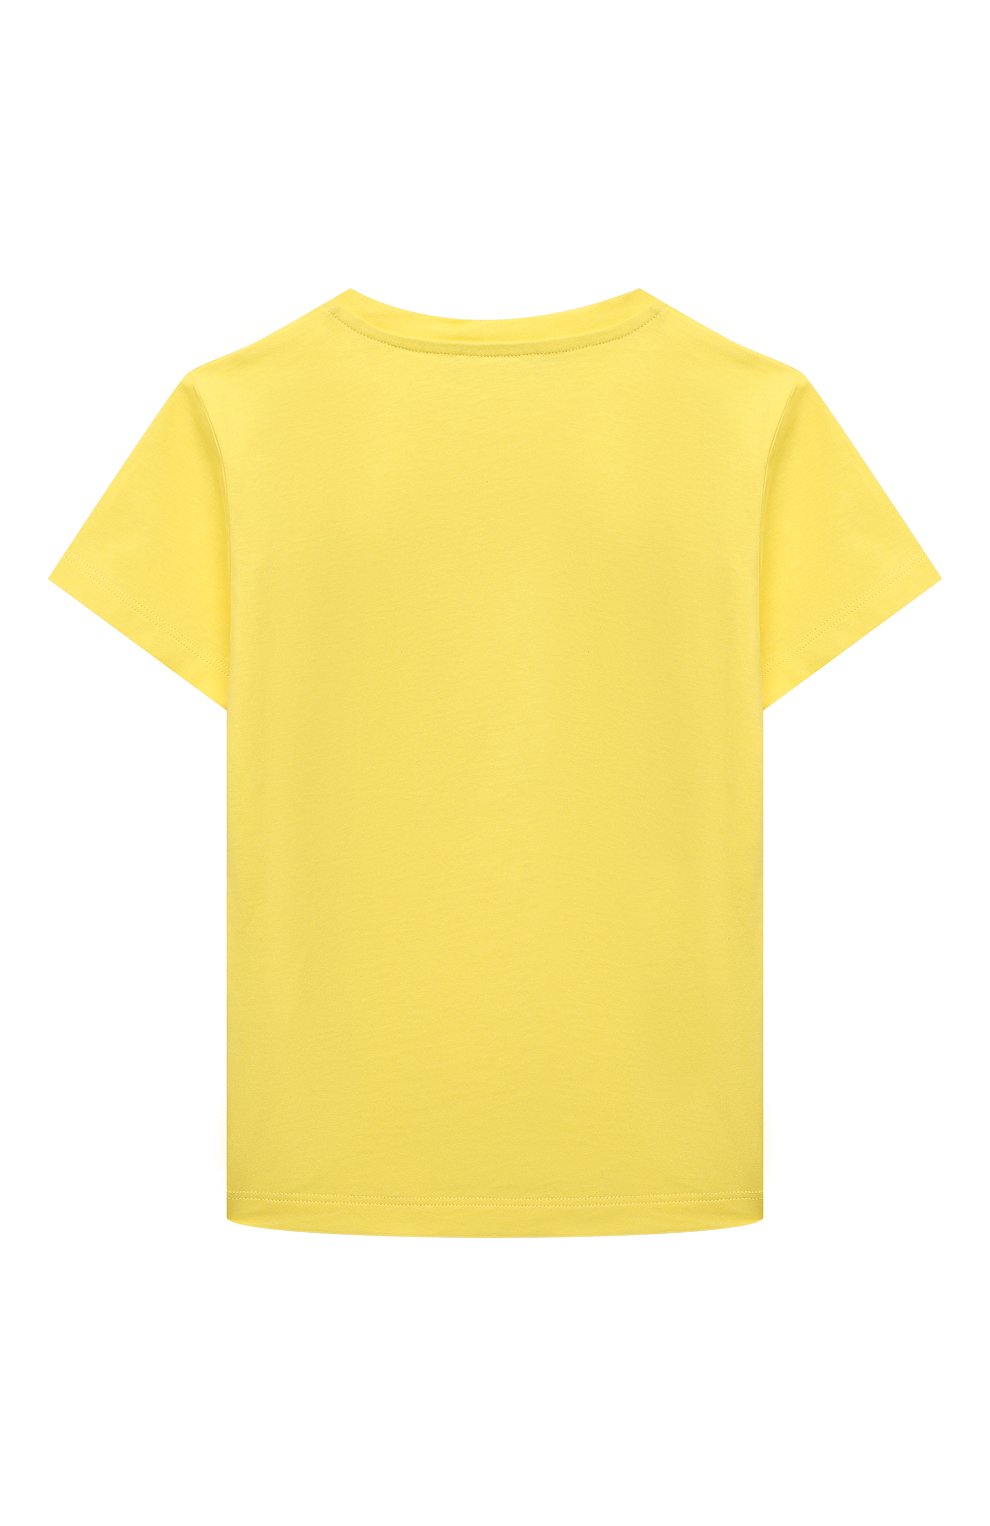 Желтая футболка детская